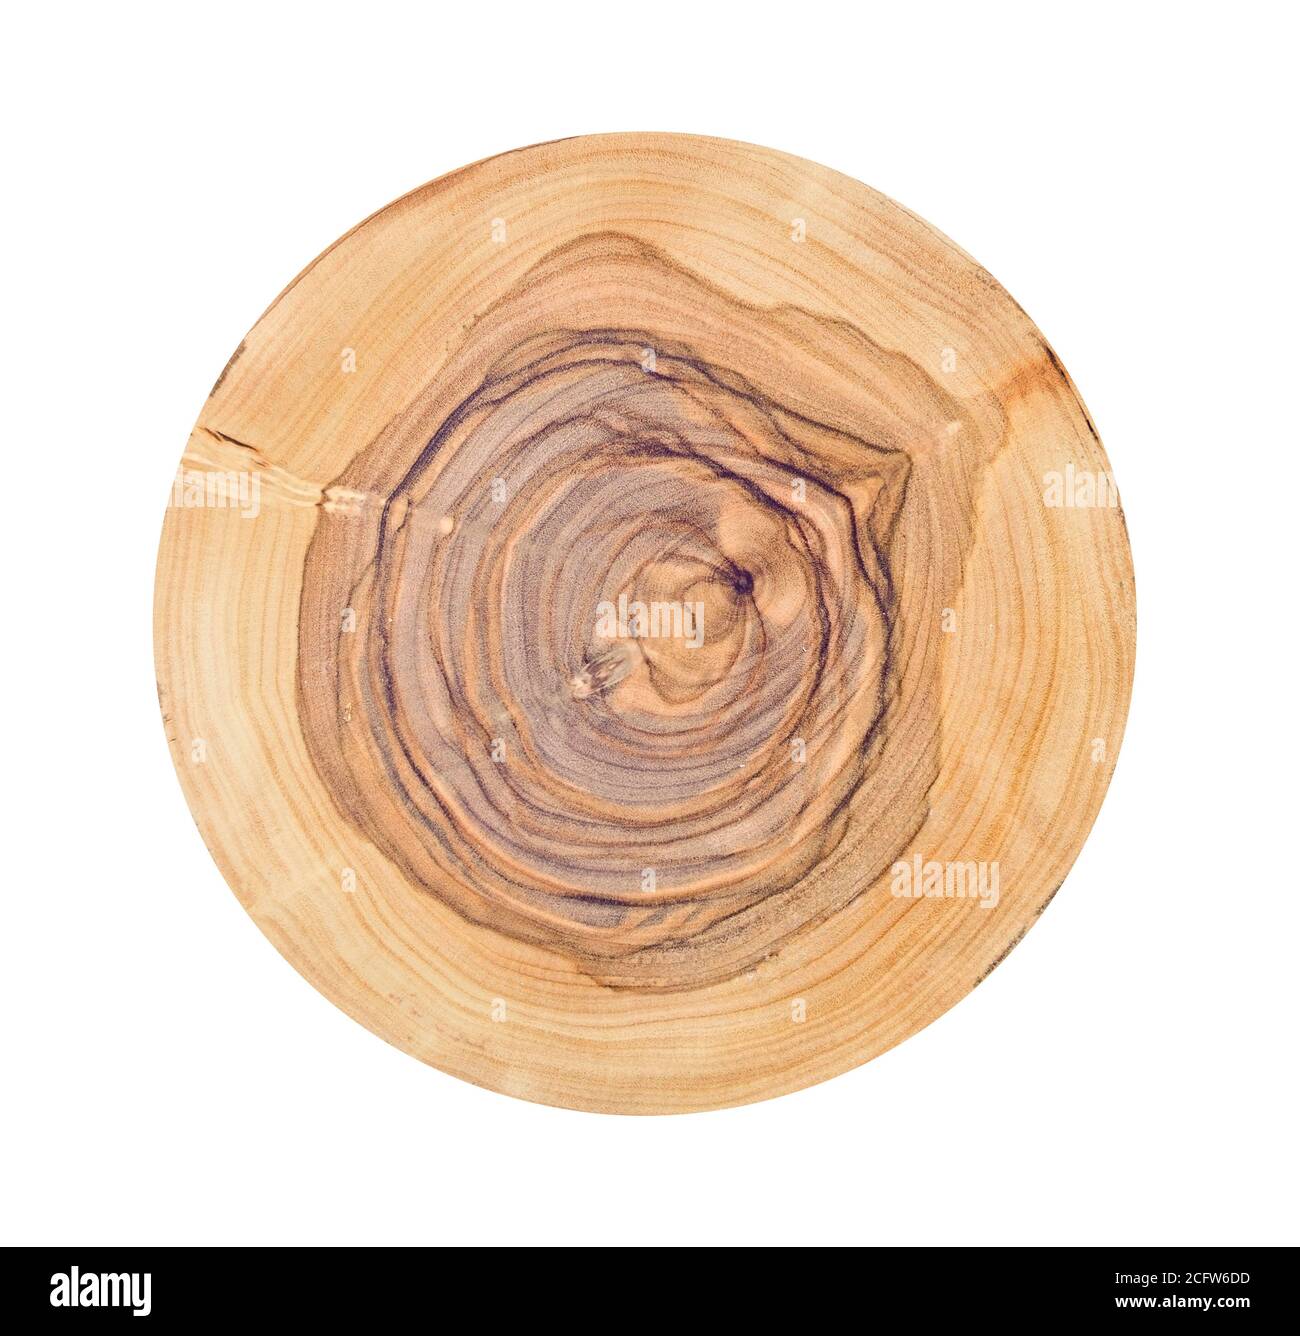 Morceau de bois abattu d'un tronc d'arbre avec des anneaux de croissance isolés sur blanc. Anneaux d'arbre avec texture et détail. Banque D'Images